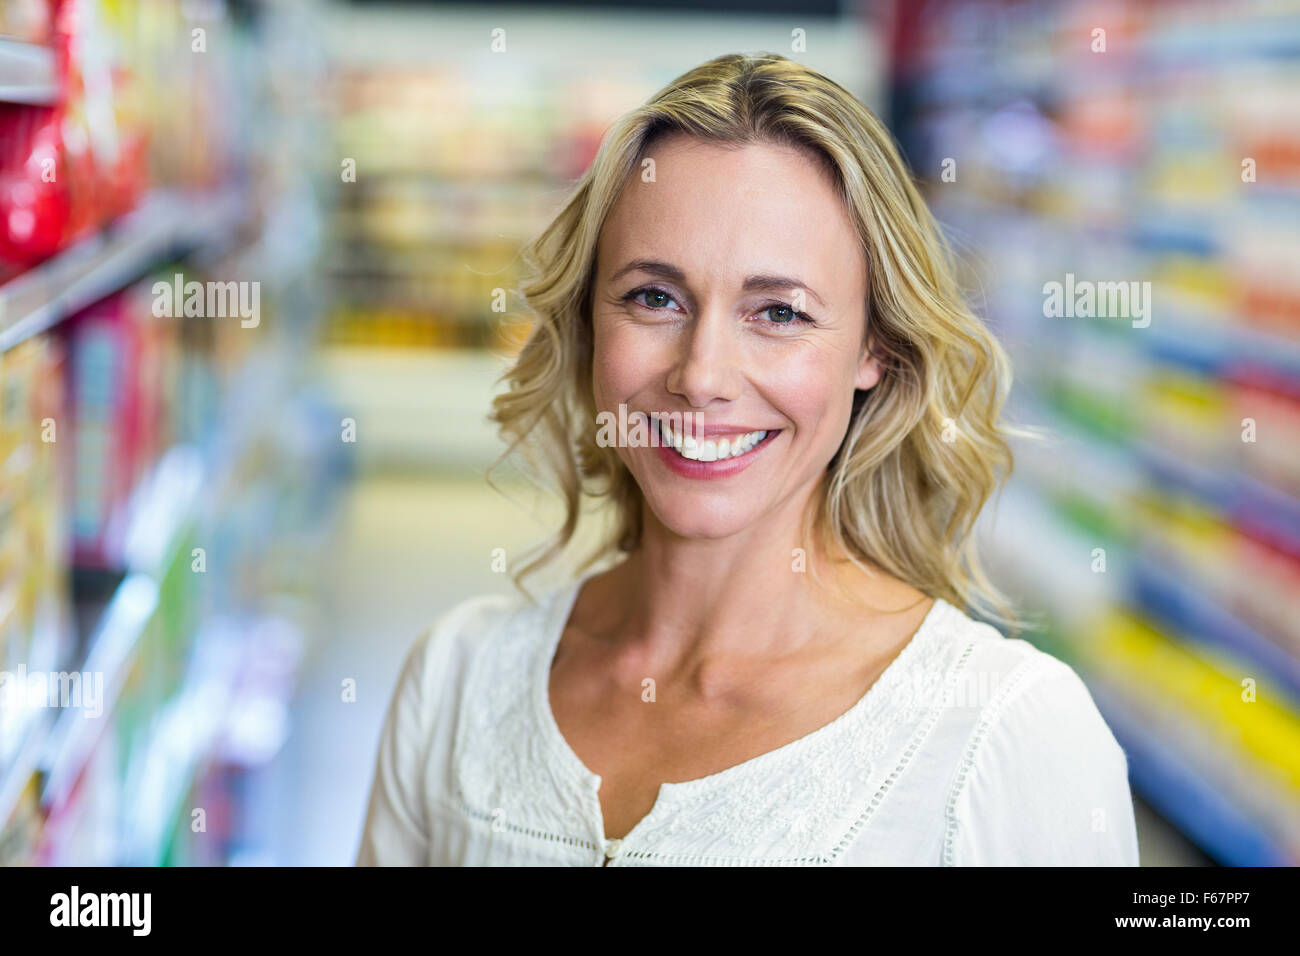 Femme souriante au supermarché Banque D'Images